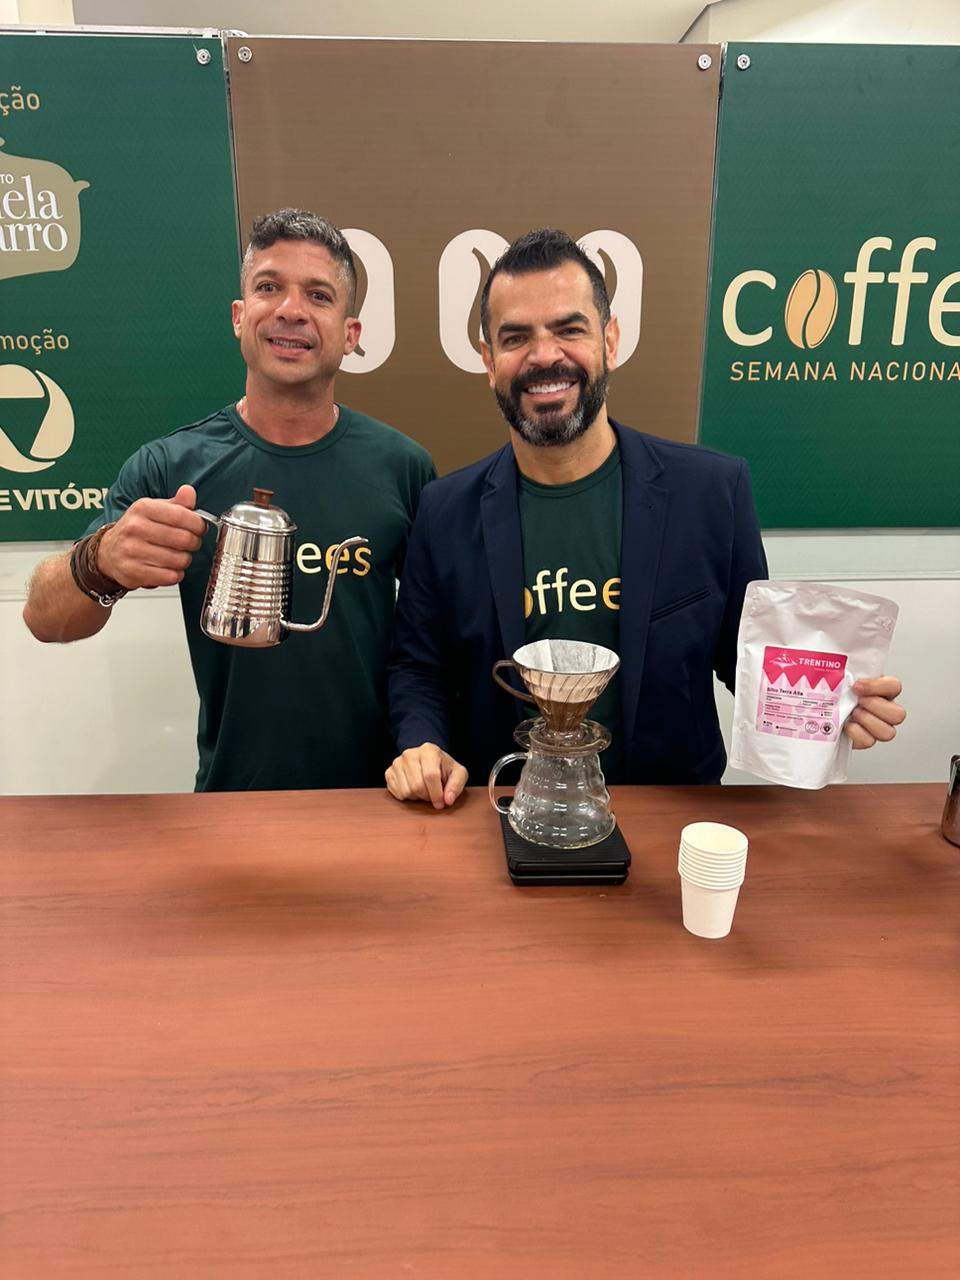 Governo ES - Semana Nacional do Café (Coffees) chega a Vitória com  tendências e oportunidades